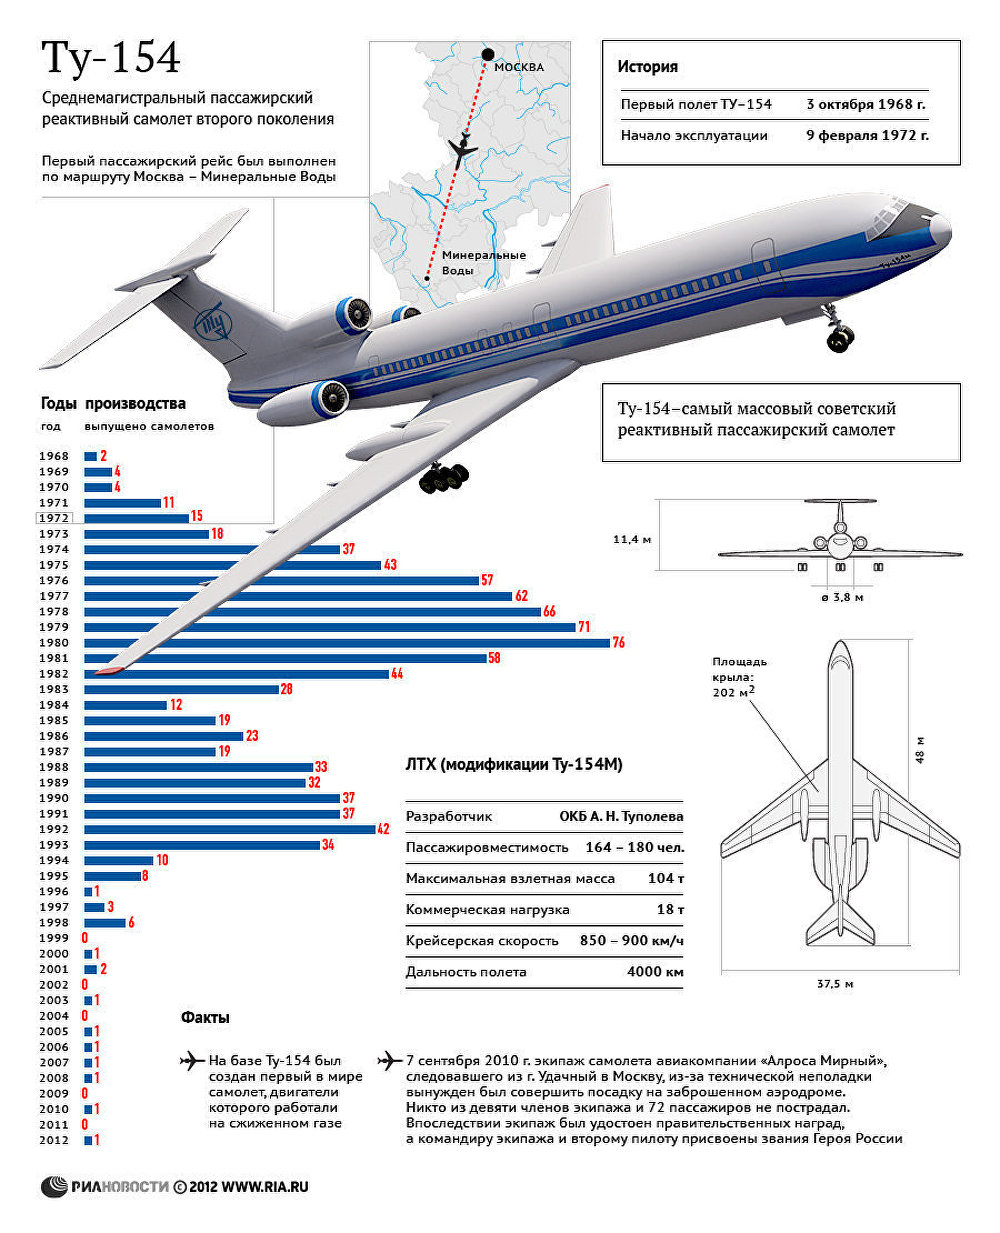 Ту-154: производство и история легендарного самолета